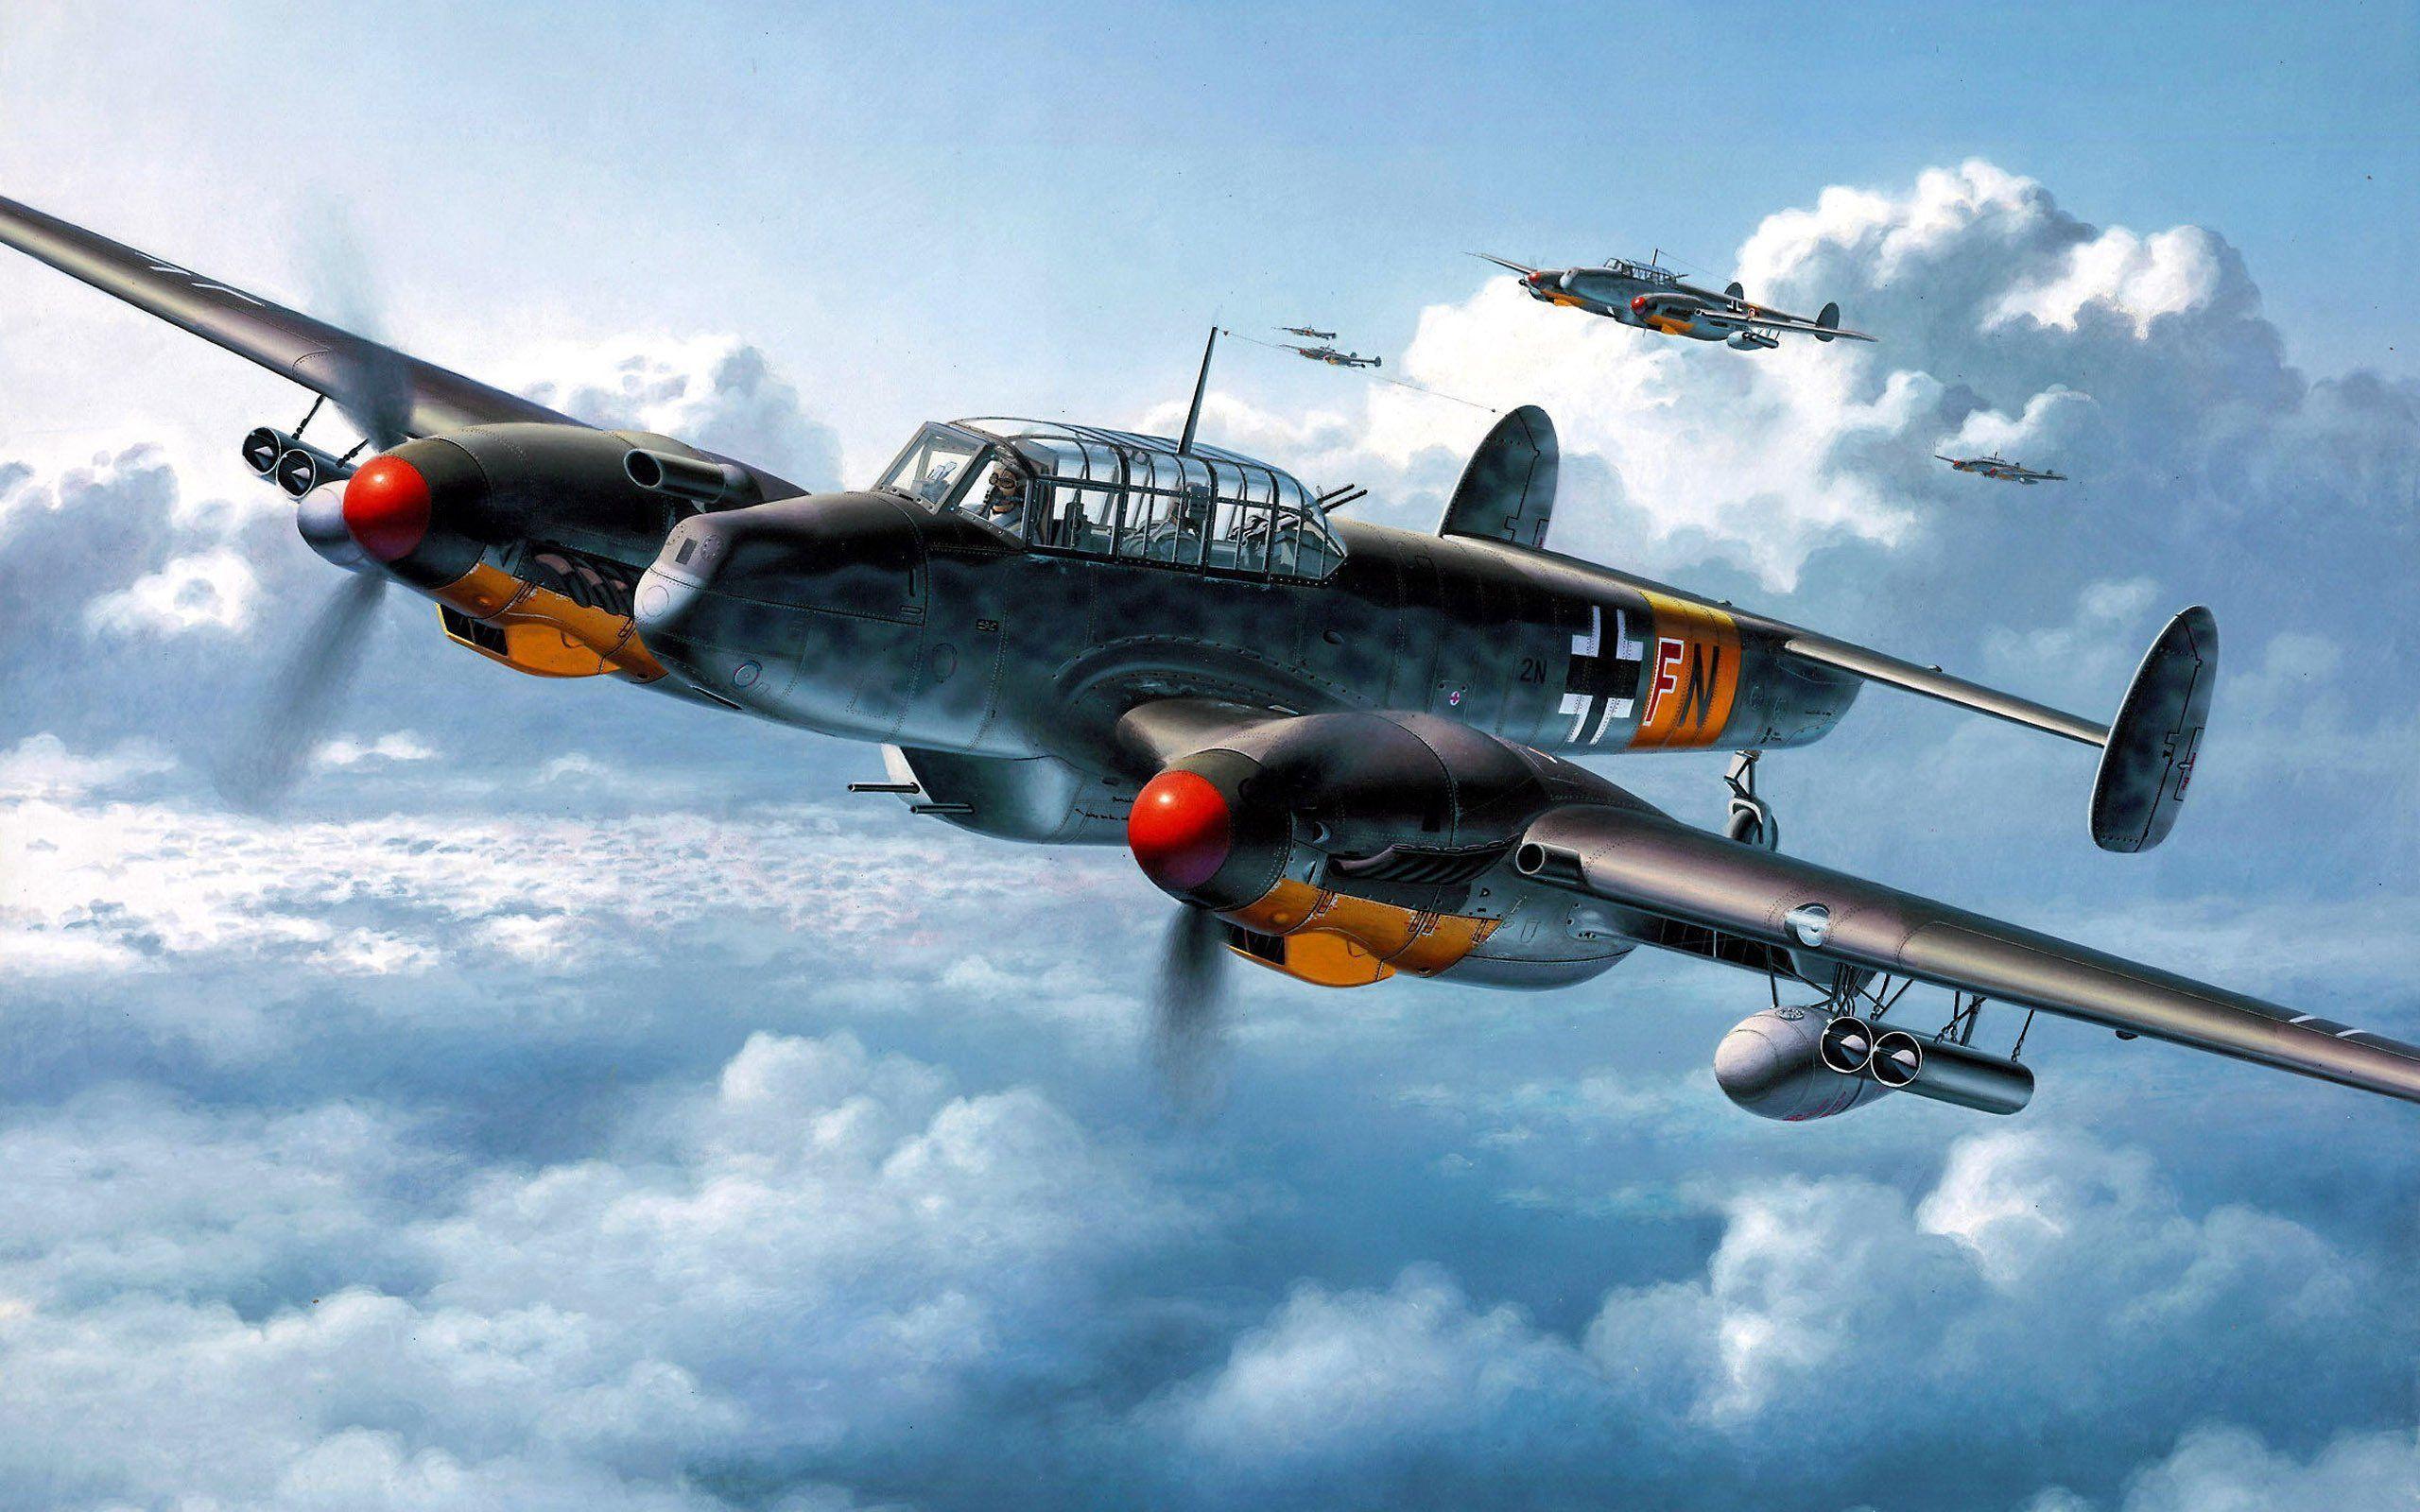 Messerschmitt Bf 109 Wallpaper 836301